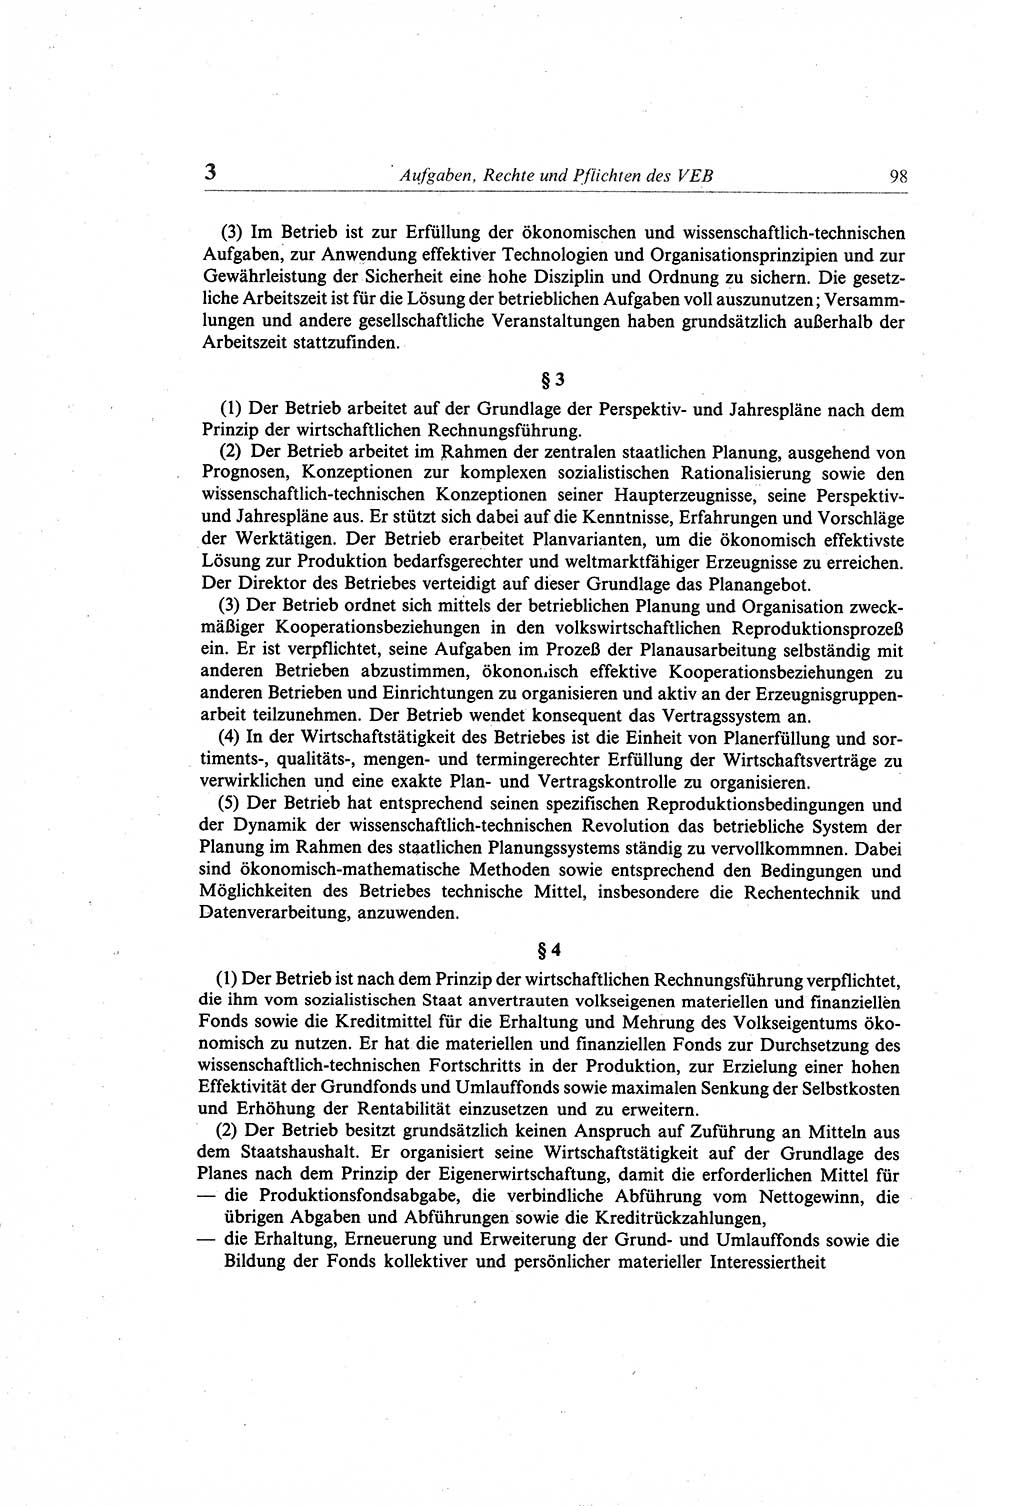 Gesetzbuch der Arbeit (GBA) und andere ausgewählte rechtliche Bestimmungen [Deutsche Demokratische Republik (DDR)] 1968, Seite 98 (GBA DDR 1968, S. 98)